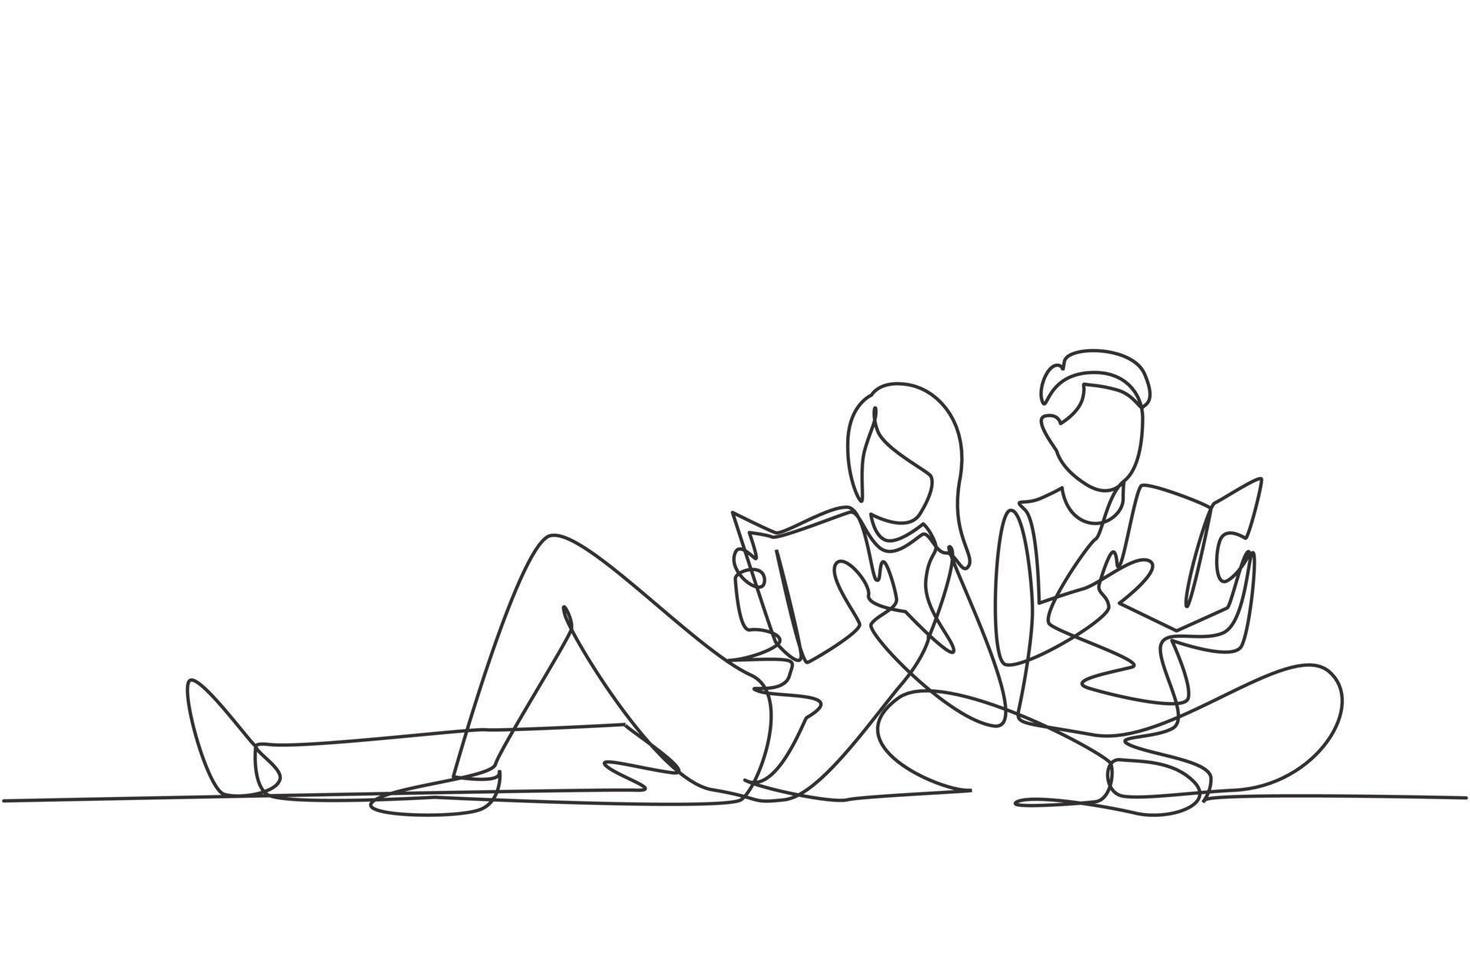 une ligne continue de dessin d'étudiants femme et homme lisant ensemble, apprenant et assis au parc. fans ou amoureux de la littérature, concept d'éducation. illustration graphique de vecteur de conception de dessin à une seule ligne